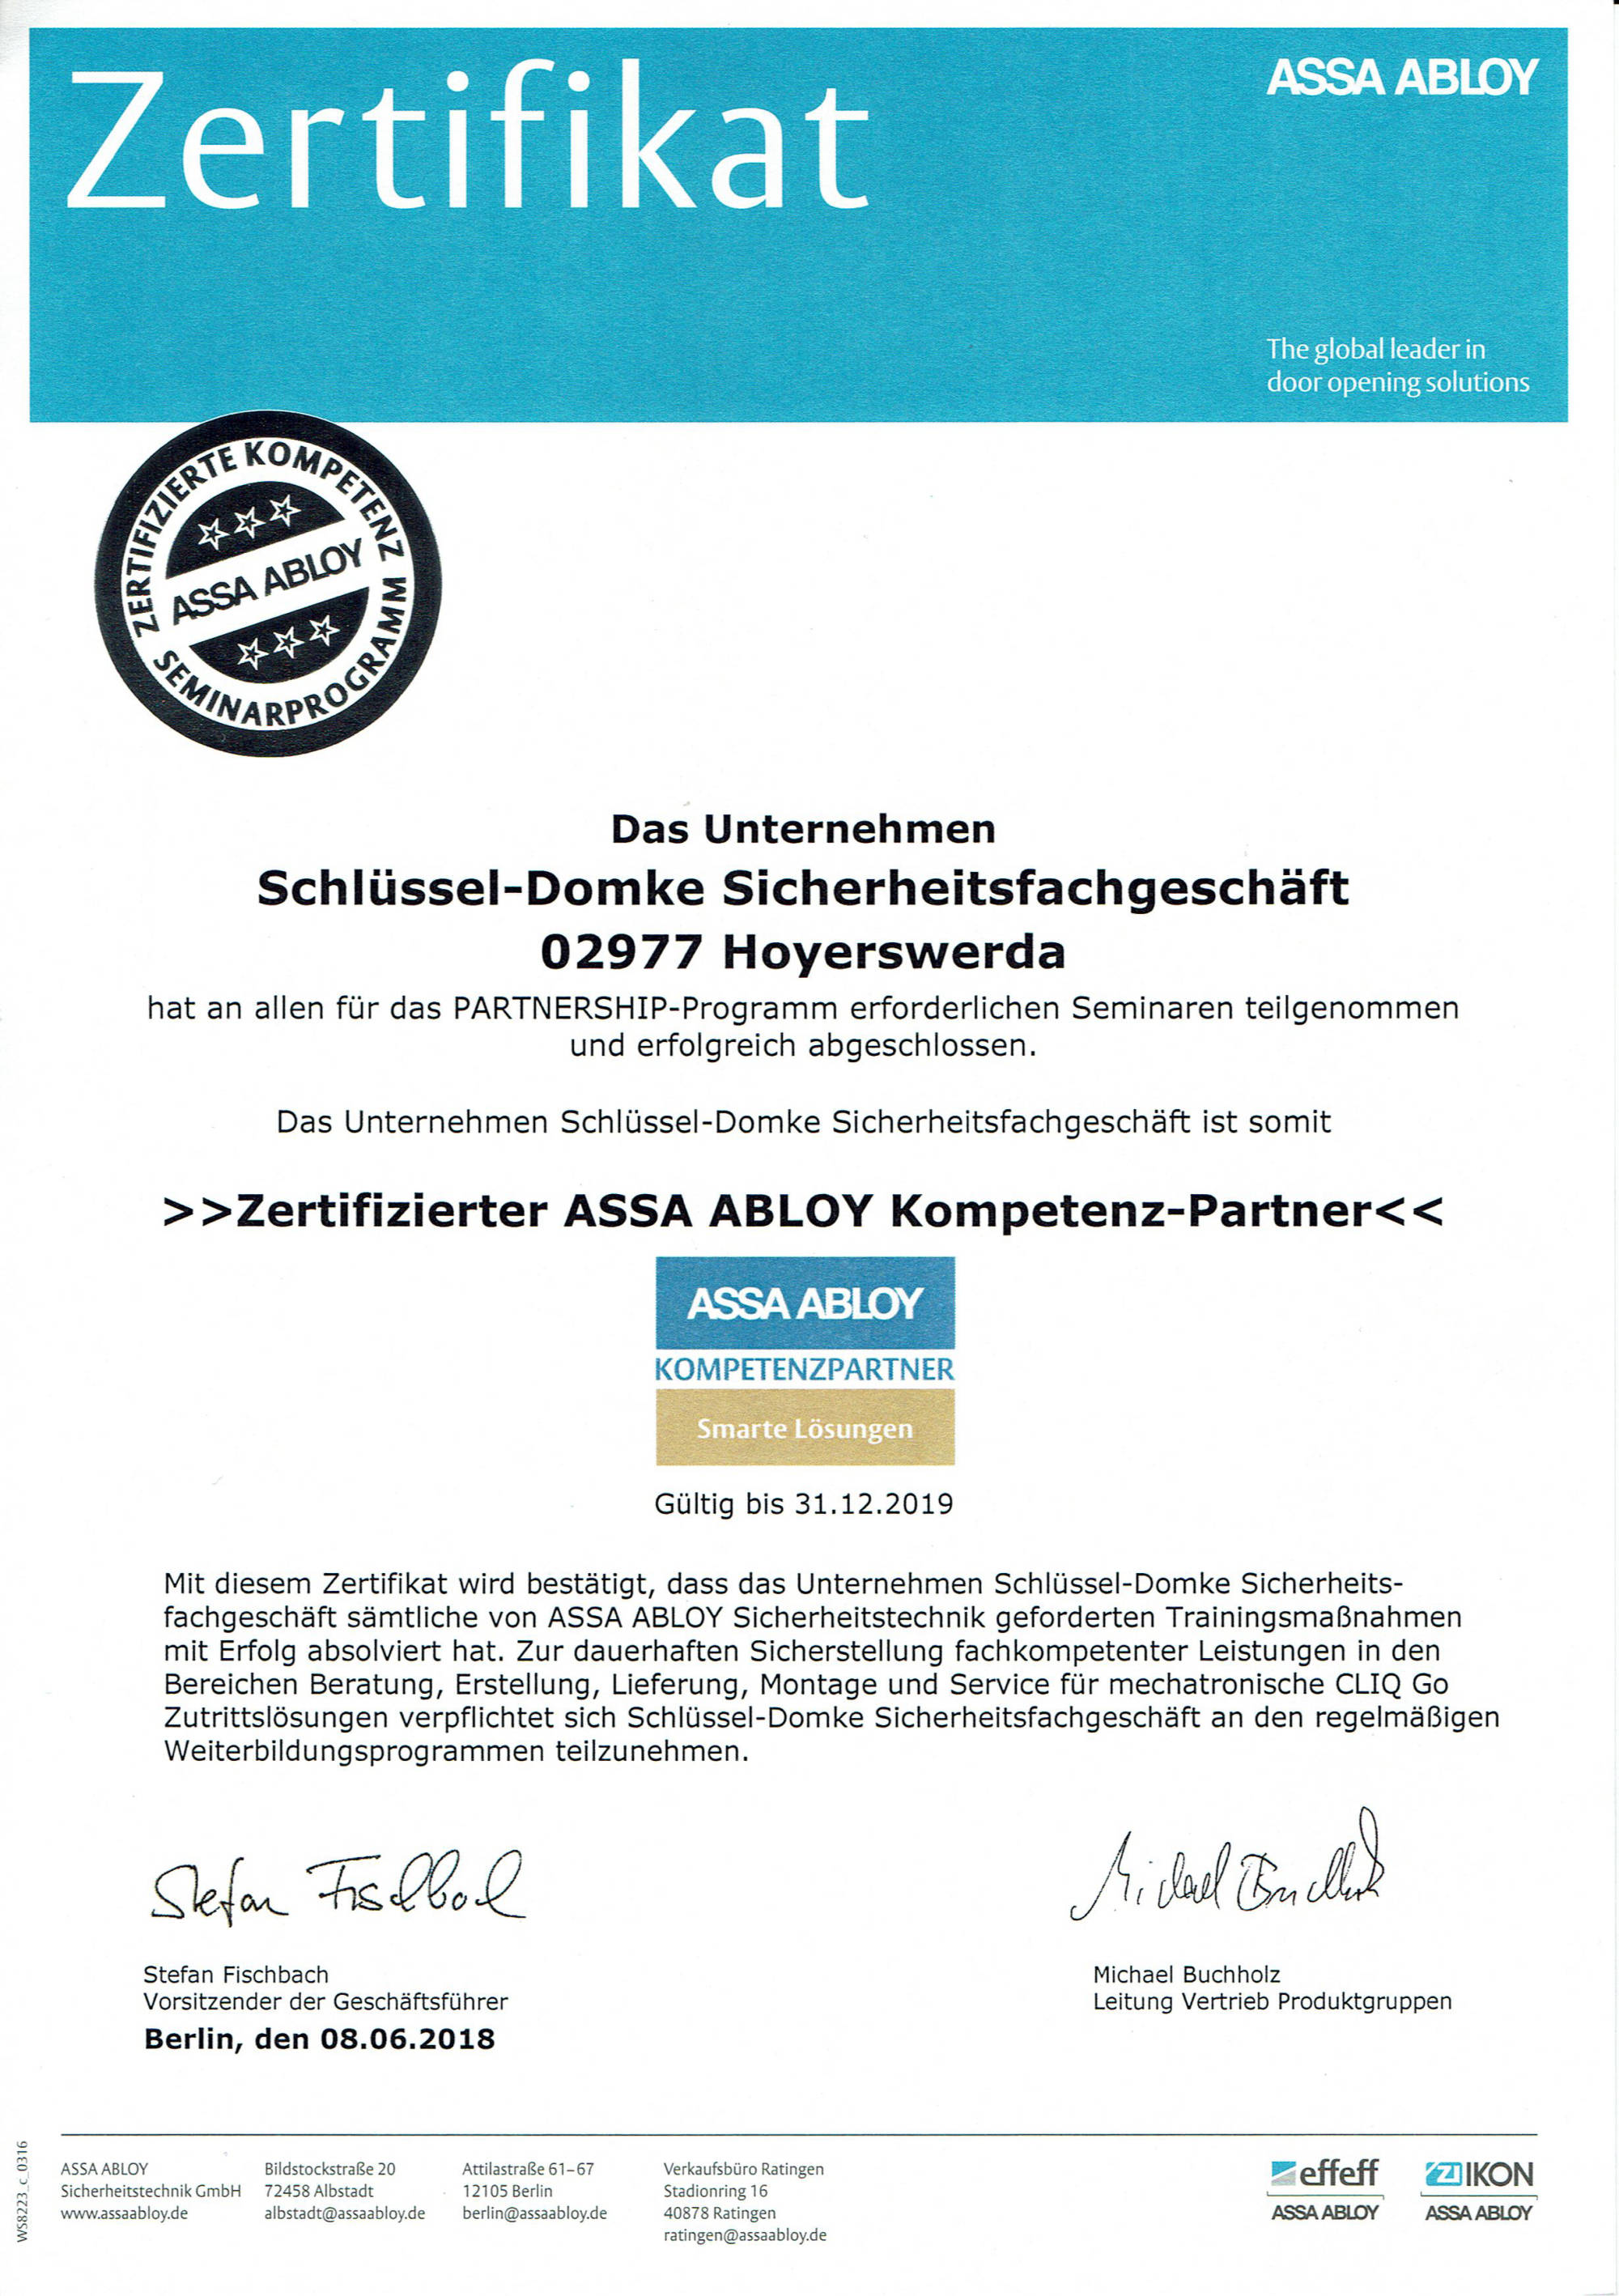 ASSA ABLOY Kompetenz-Partner